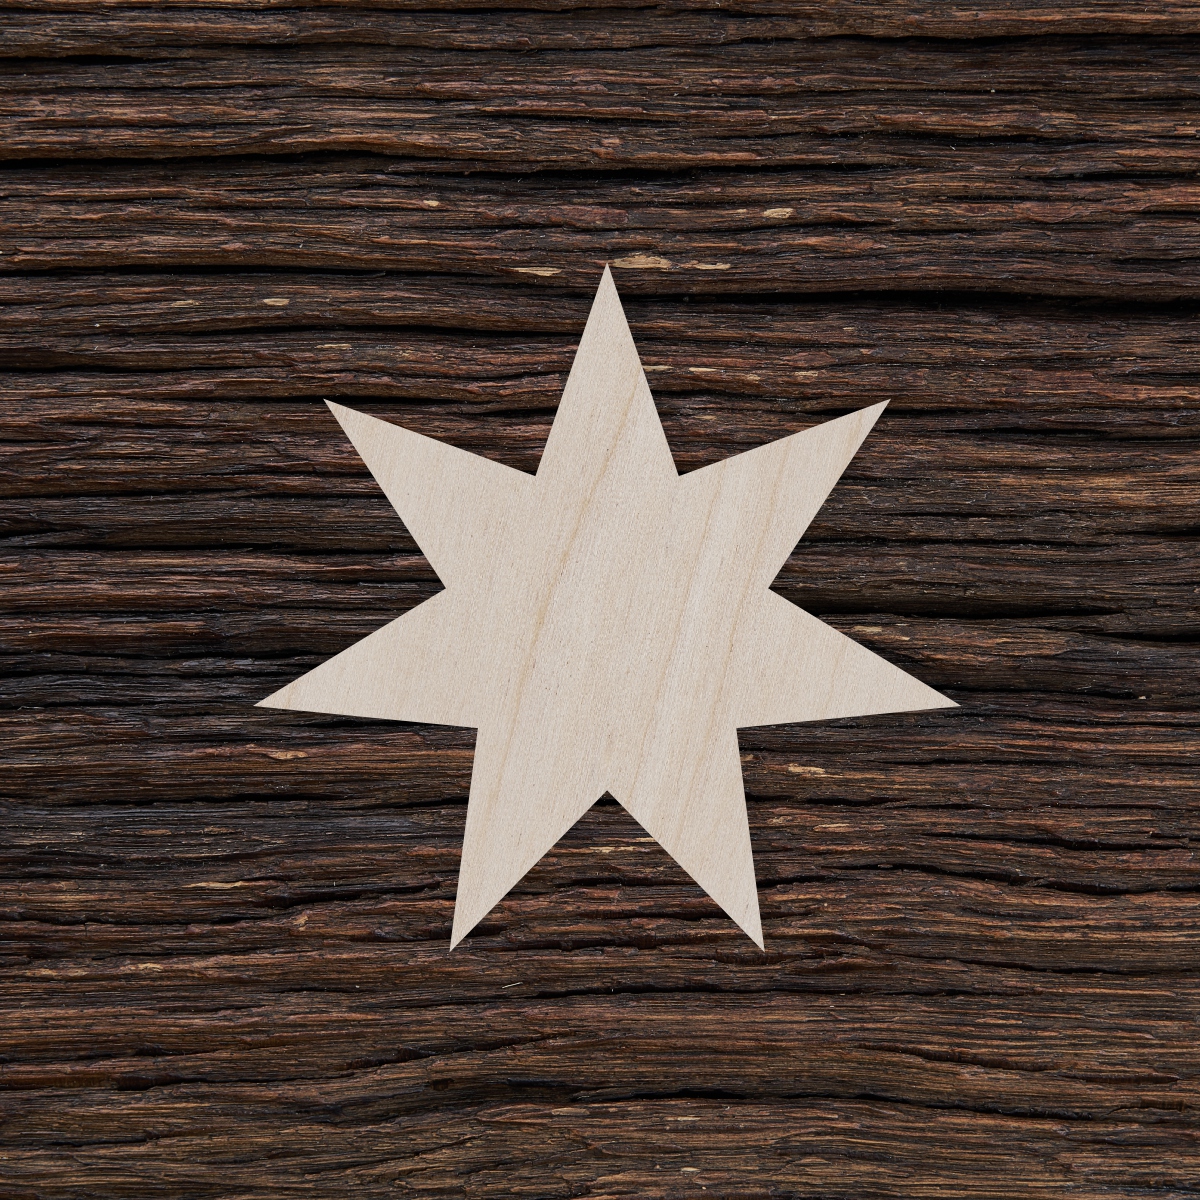 6Septynkampė žvaigždė - medinis gaminys, pjautas lazeriu - dekoravimui ir dažymui